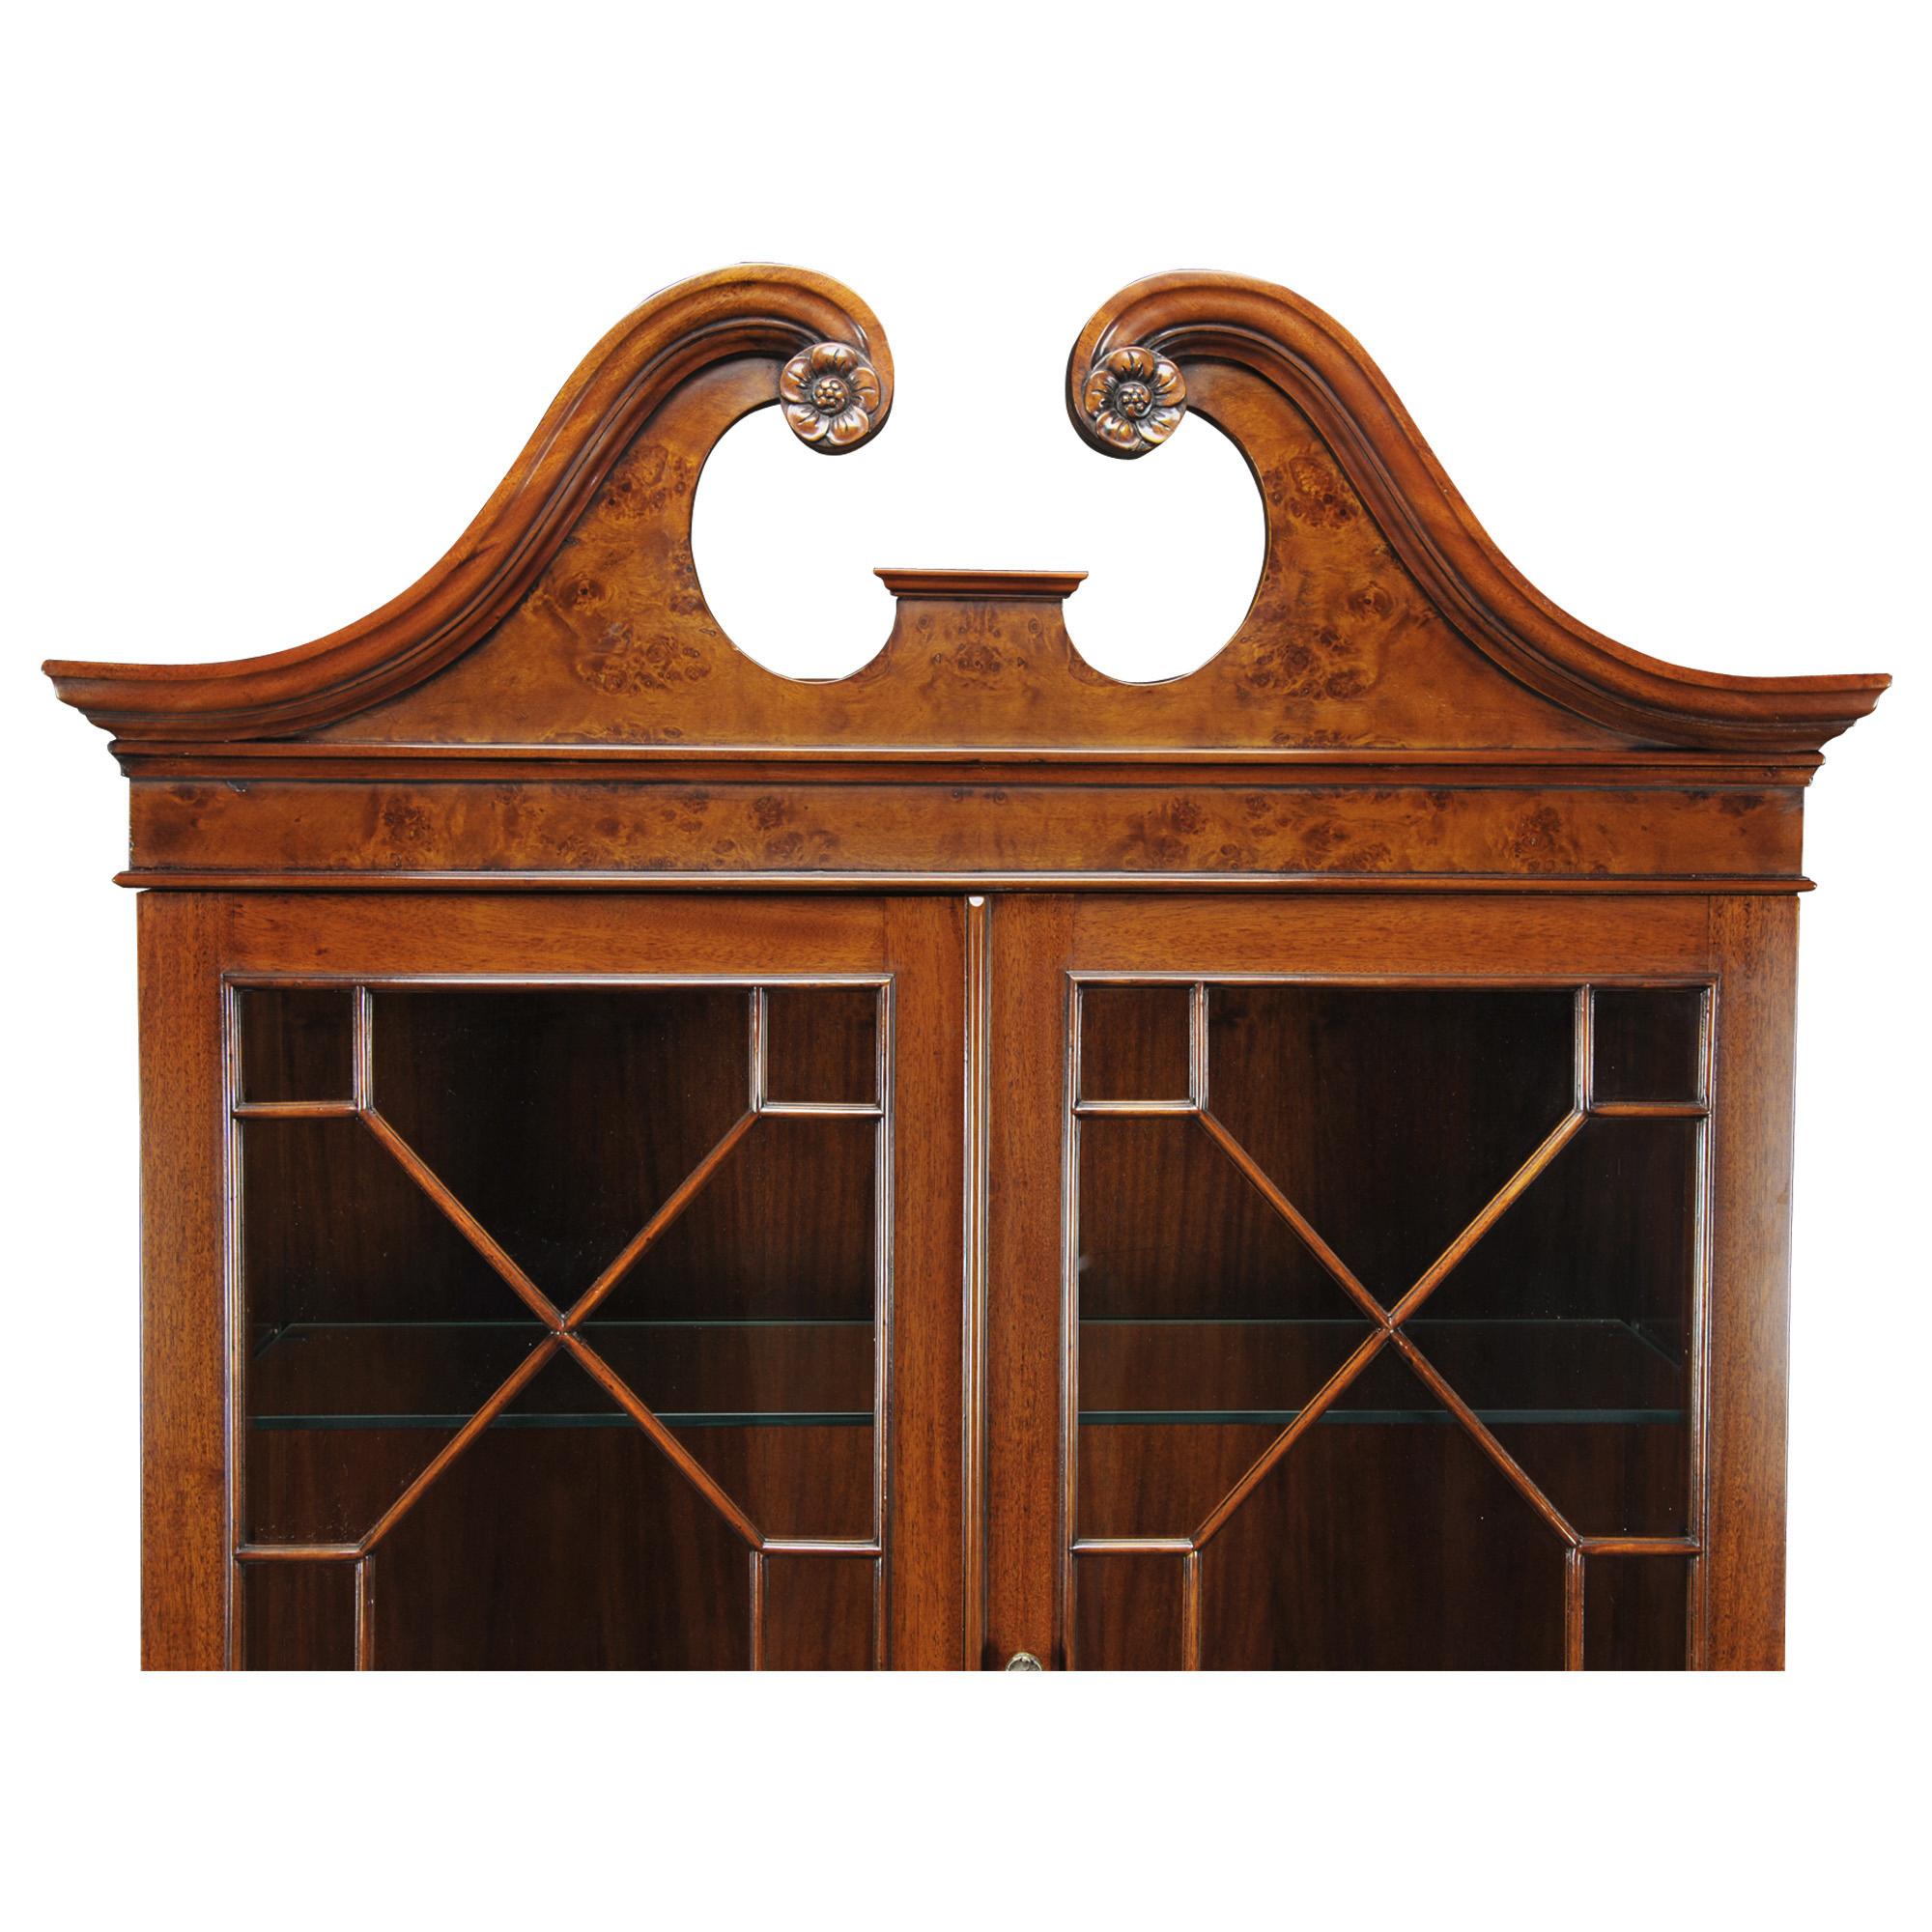 Ce bureau secrétaire en bois d'ébène de Niagara Furniture possède toutes les caractéristiques d'un original antique. Fabriquée en acajou massif de haute qualité et en placages brunis, la bibliothèque présente un joli fronton en forme de col de